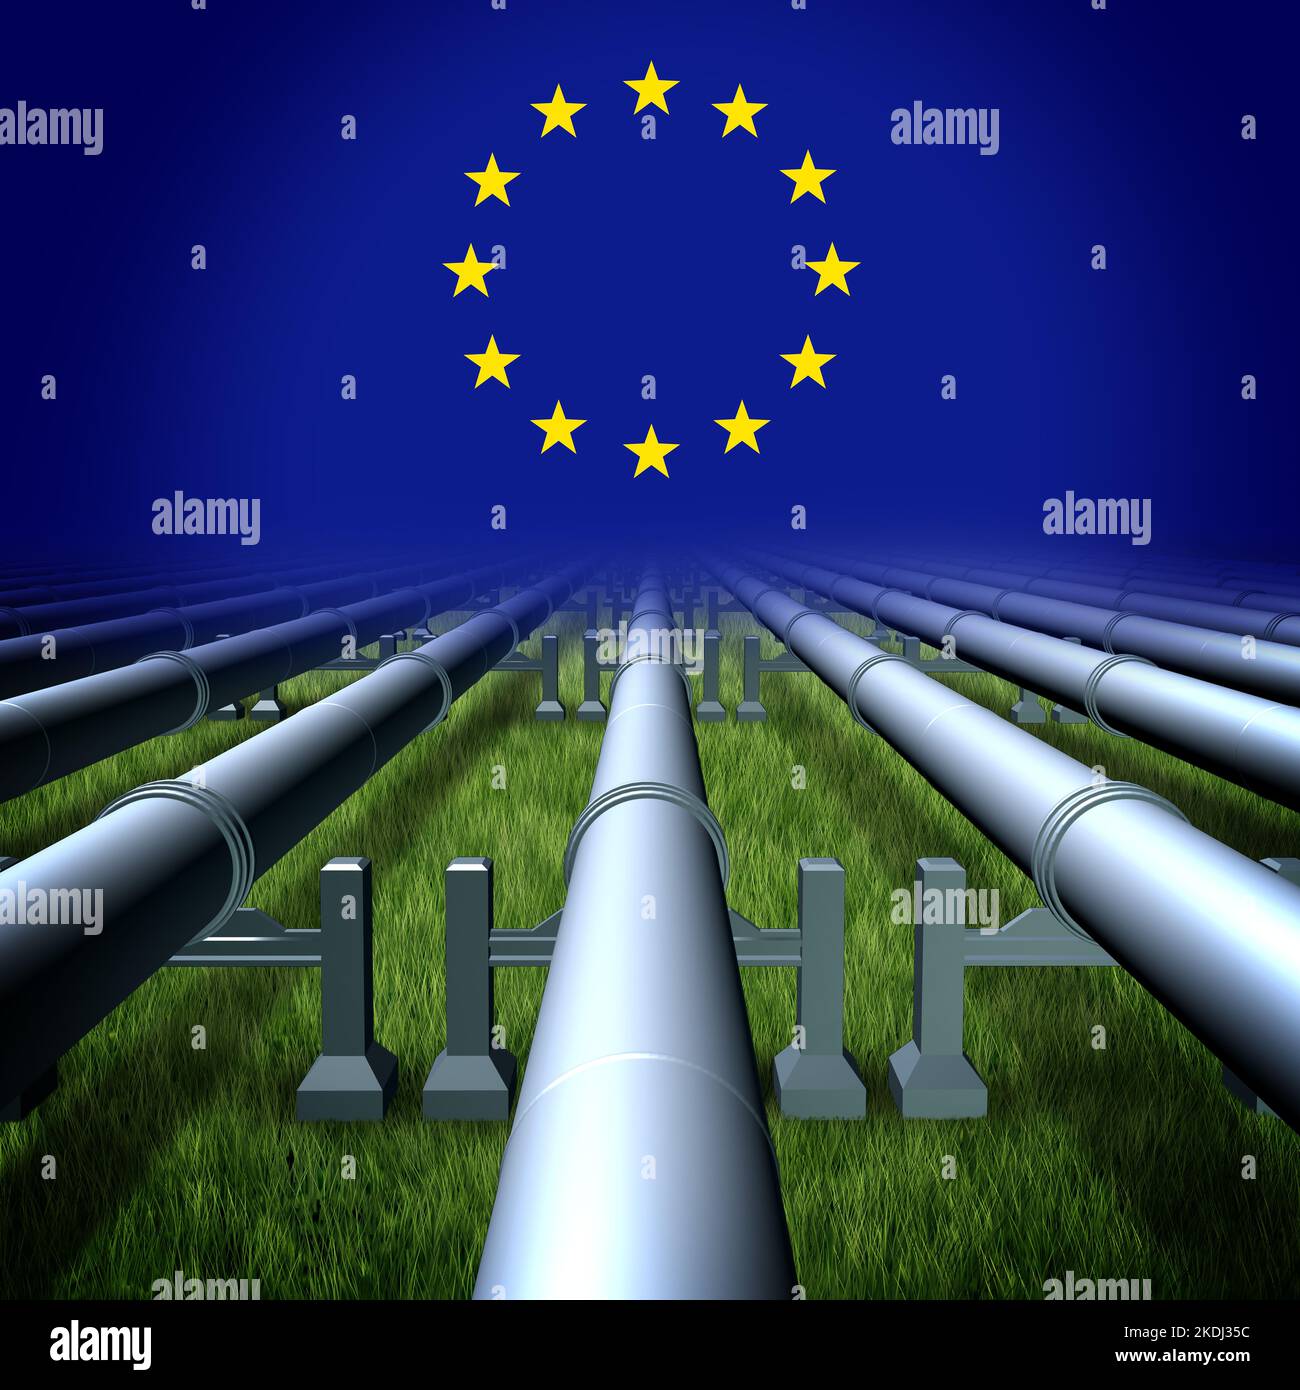 Europa crisi energetica come problemi di approvvigionamento di gas e petrolio dell'UE dovuti alla guerra e al conflitto con un gasdotto e tubi che trasportano combustibile all'Unione europea Foto Stock